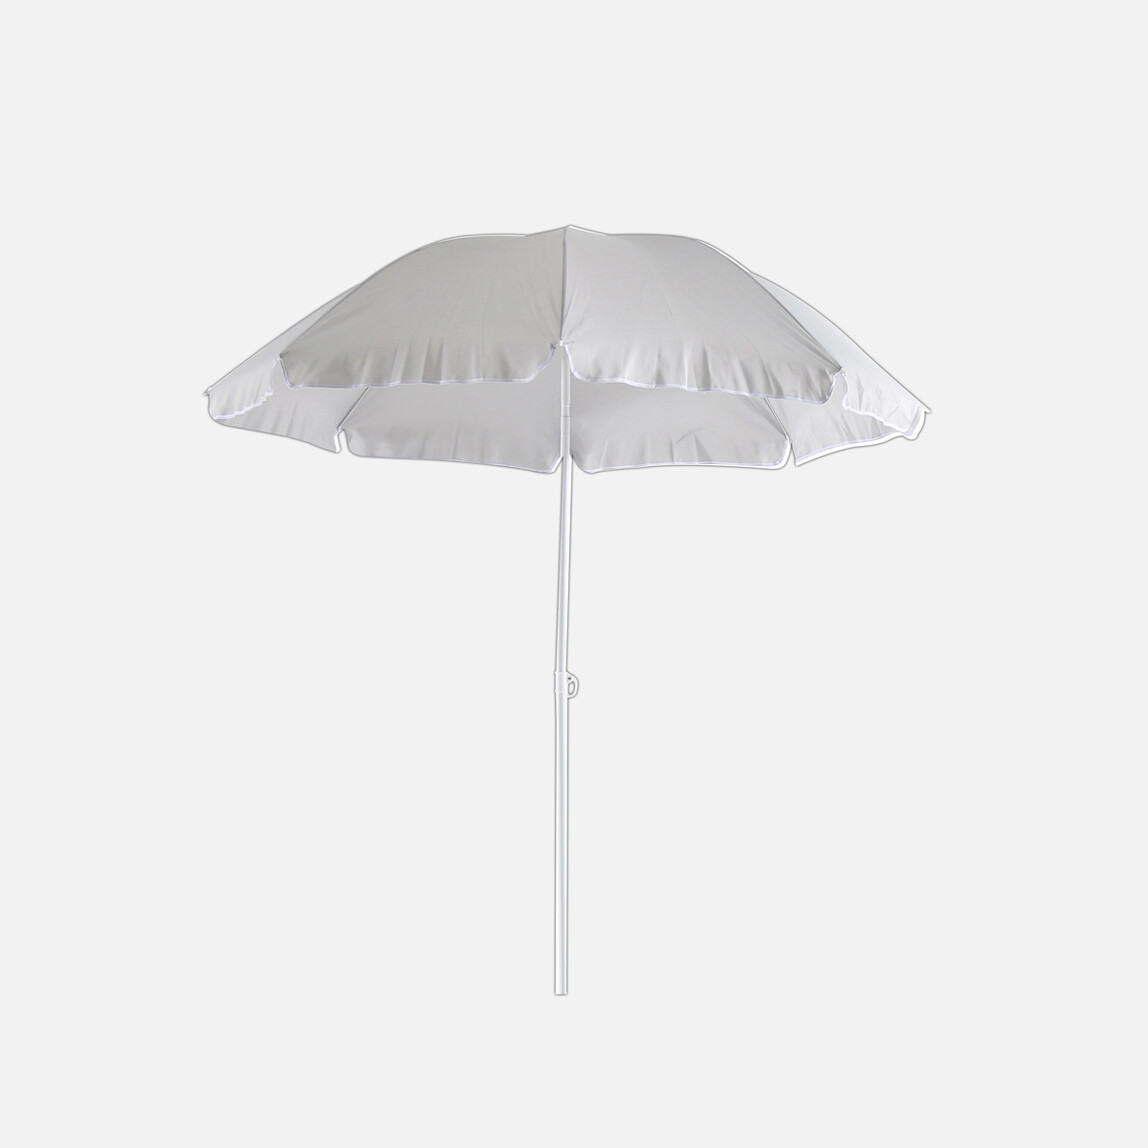    Sunfun Provence II Şemsiye Açık Gri 200 cm  